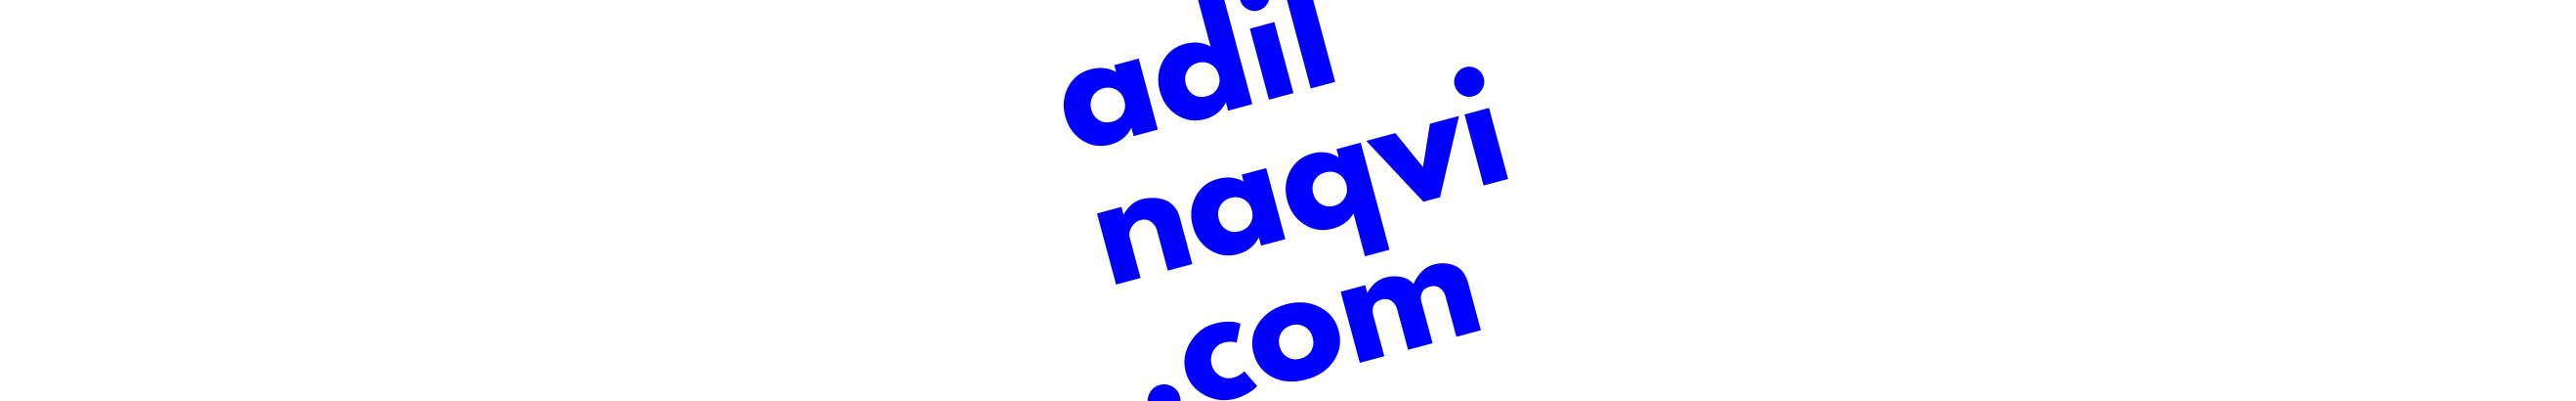 Adil Naqvi's profile banner